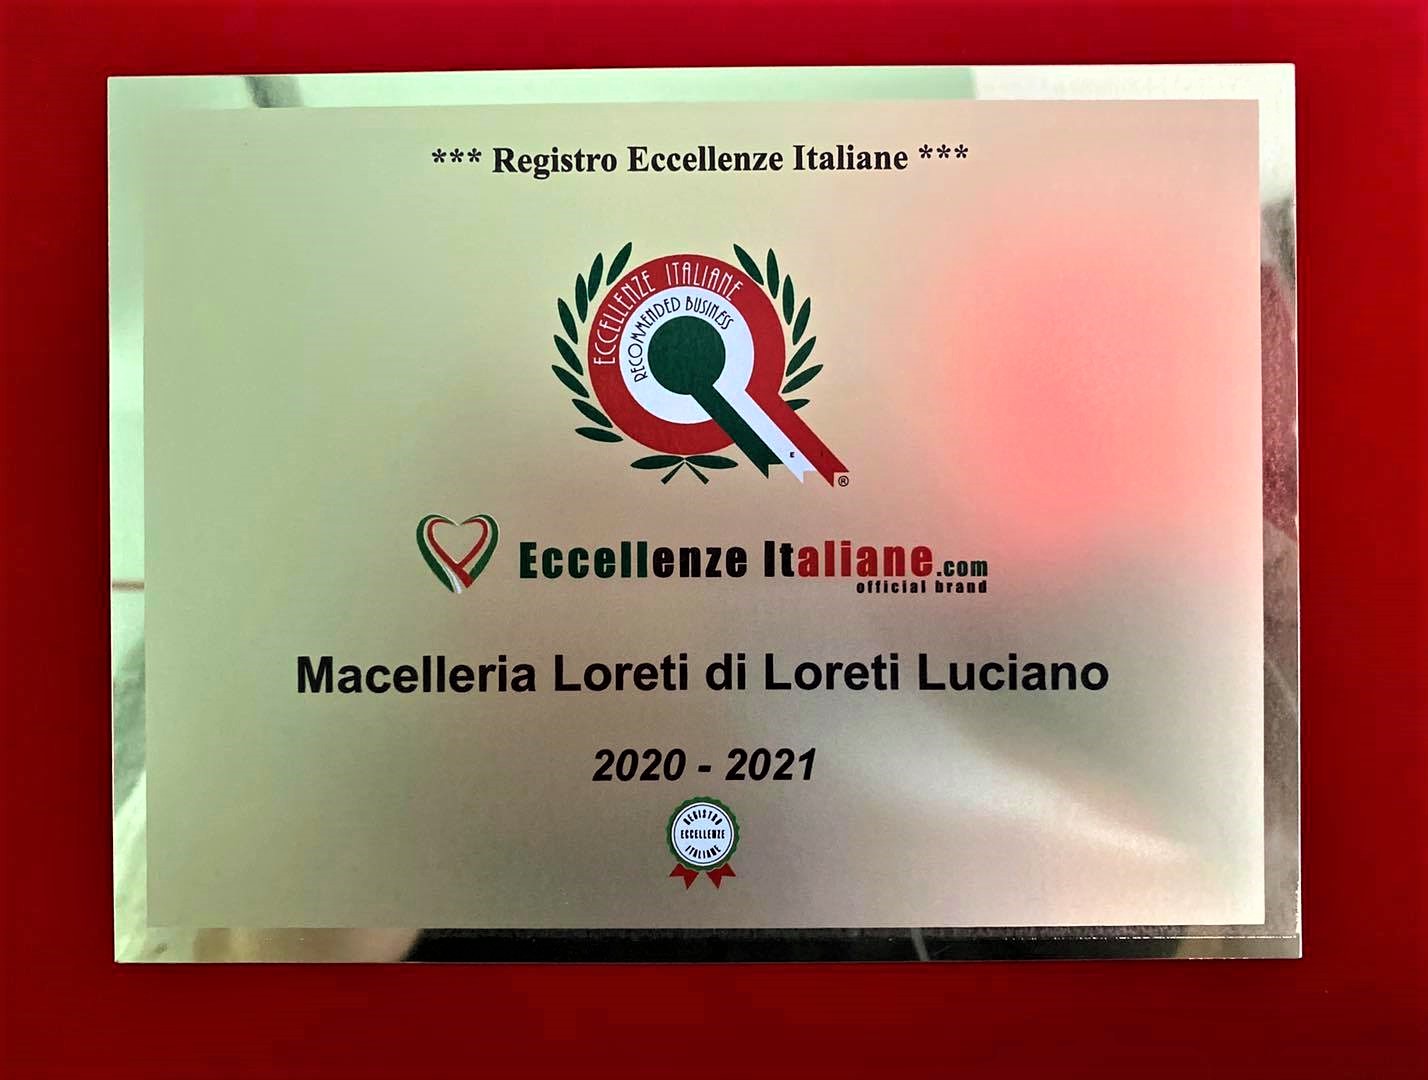 colle_di_tora_macelleria_loreti_certificato_di_eccellenza